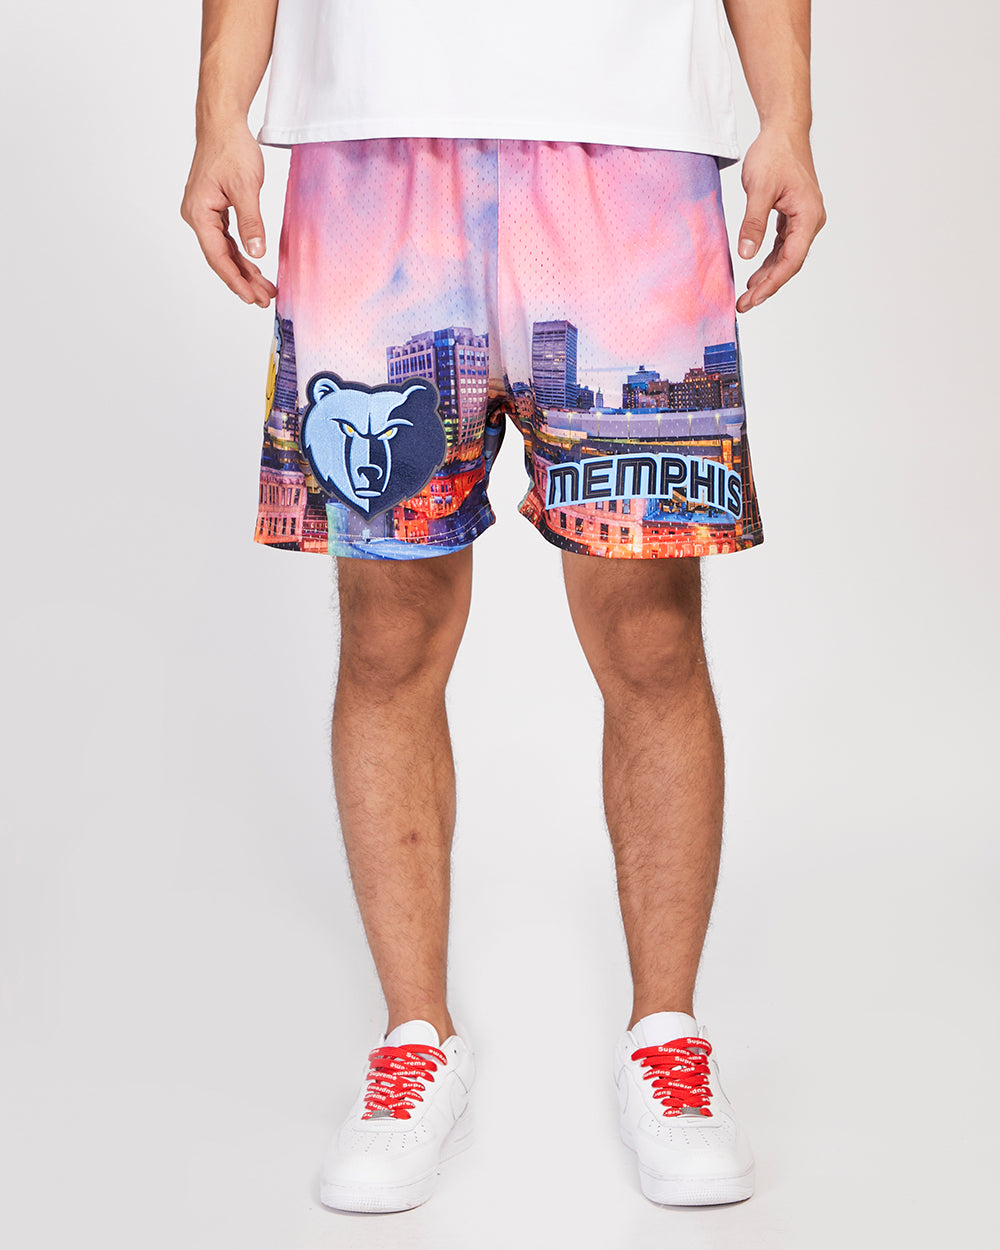 Pro Standard Memphis Grizzlies Shorts